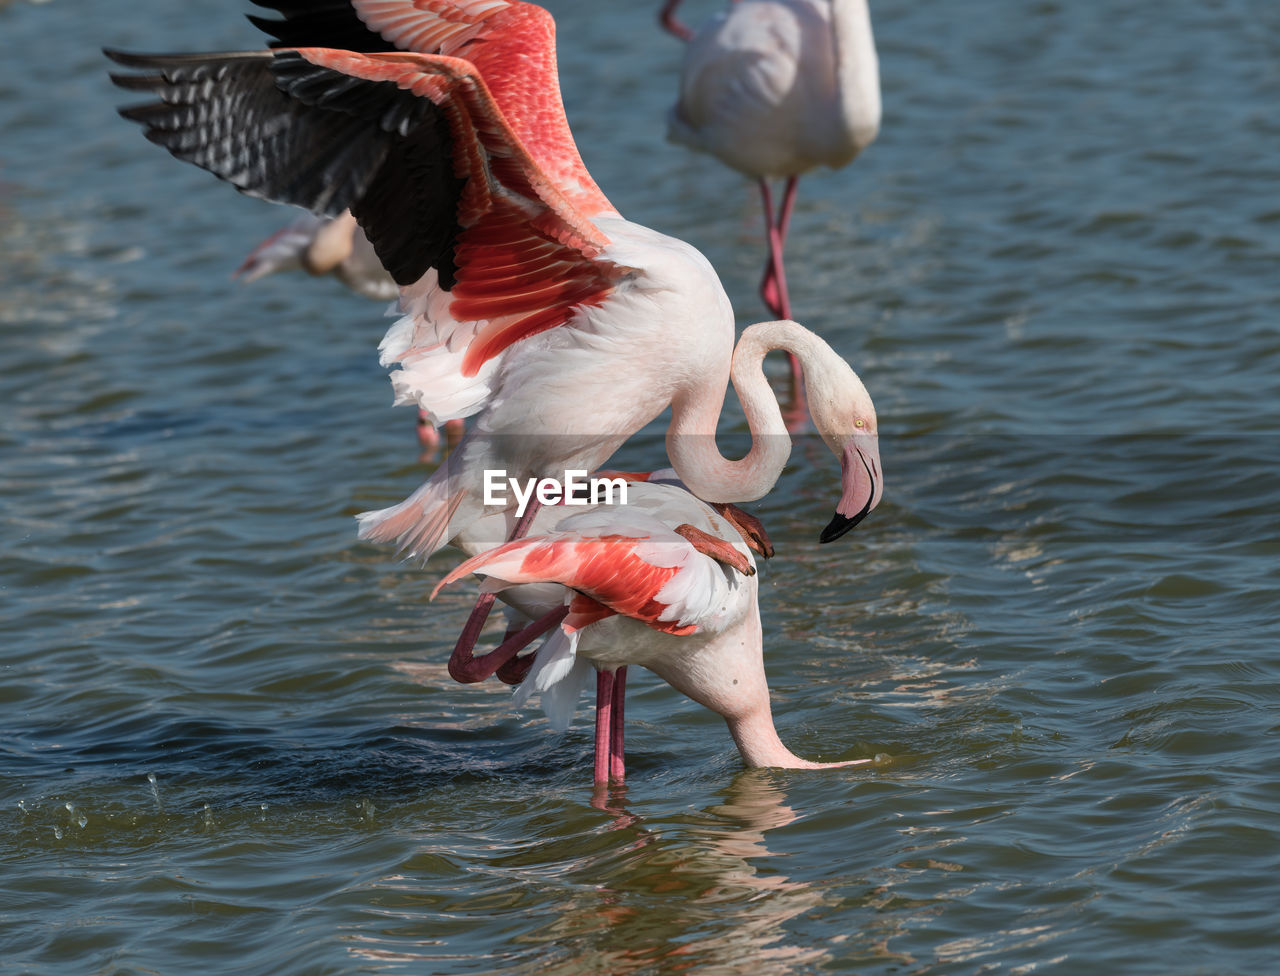 Flamingos mating